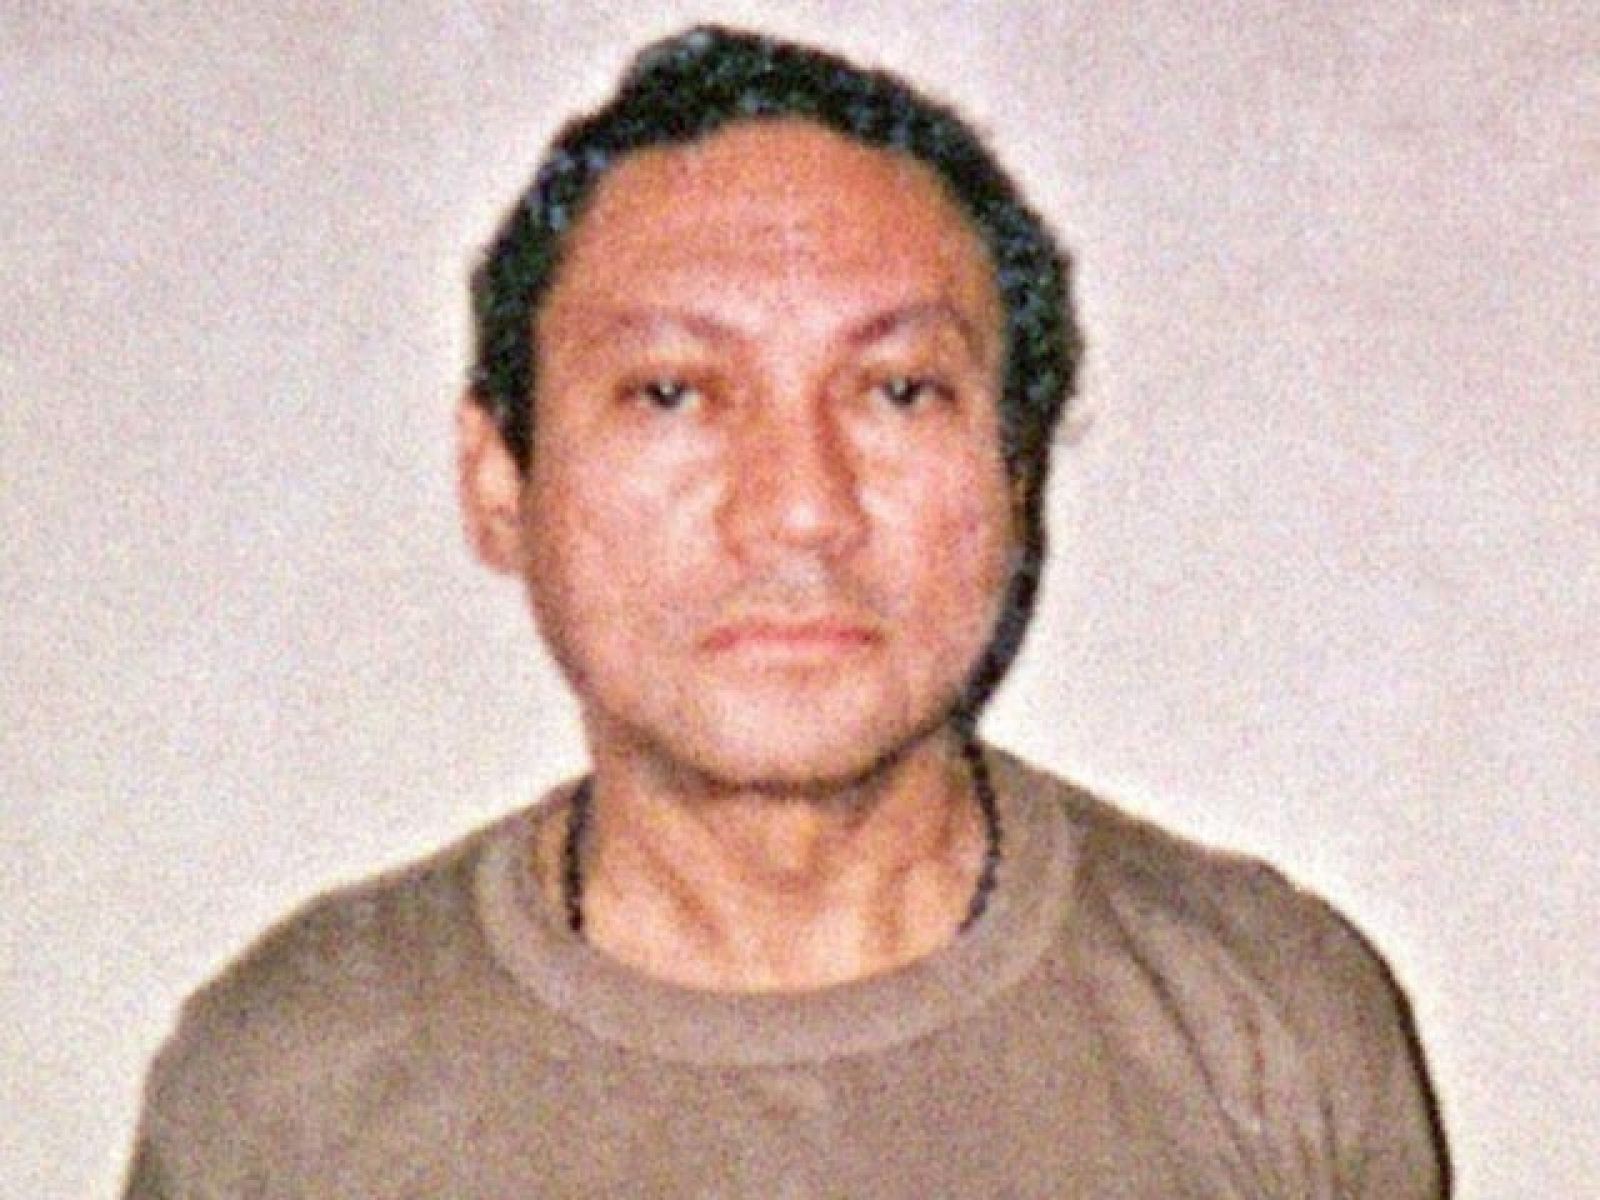 Perfil de Manuel Antonio Noriega, ex dictador de Panamá